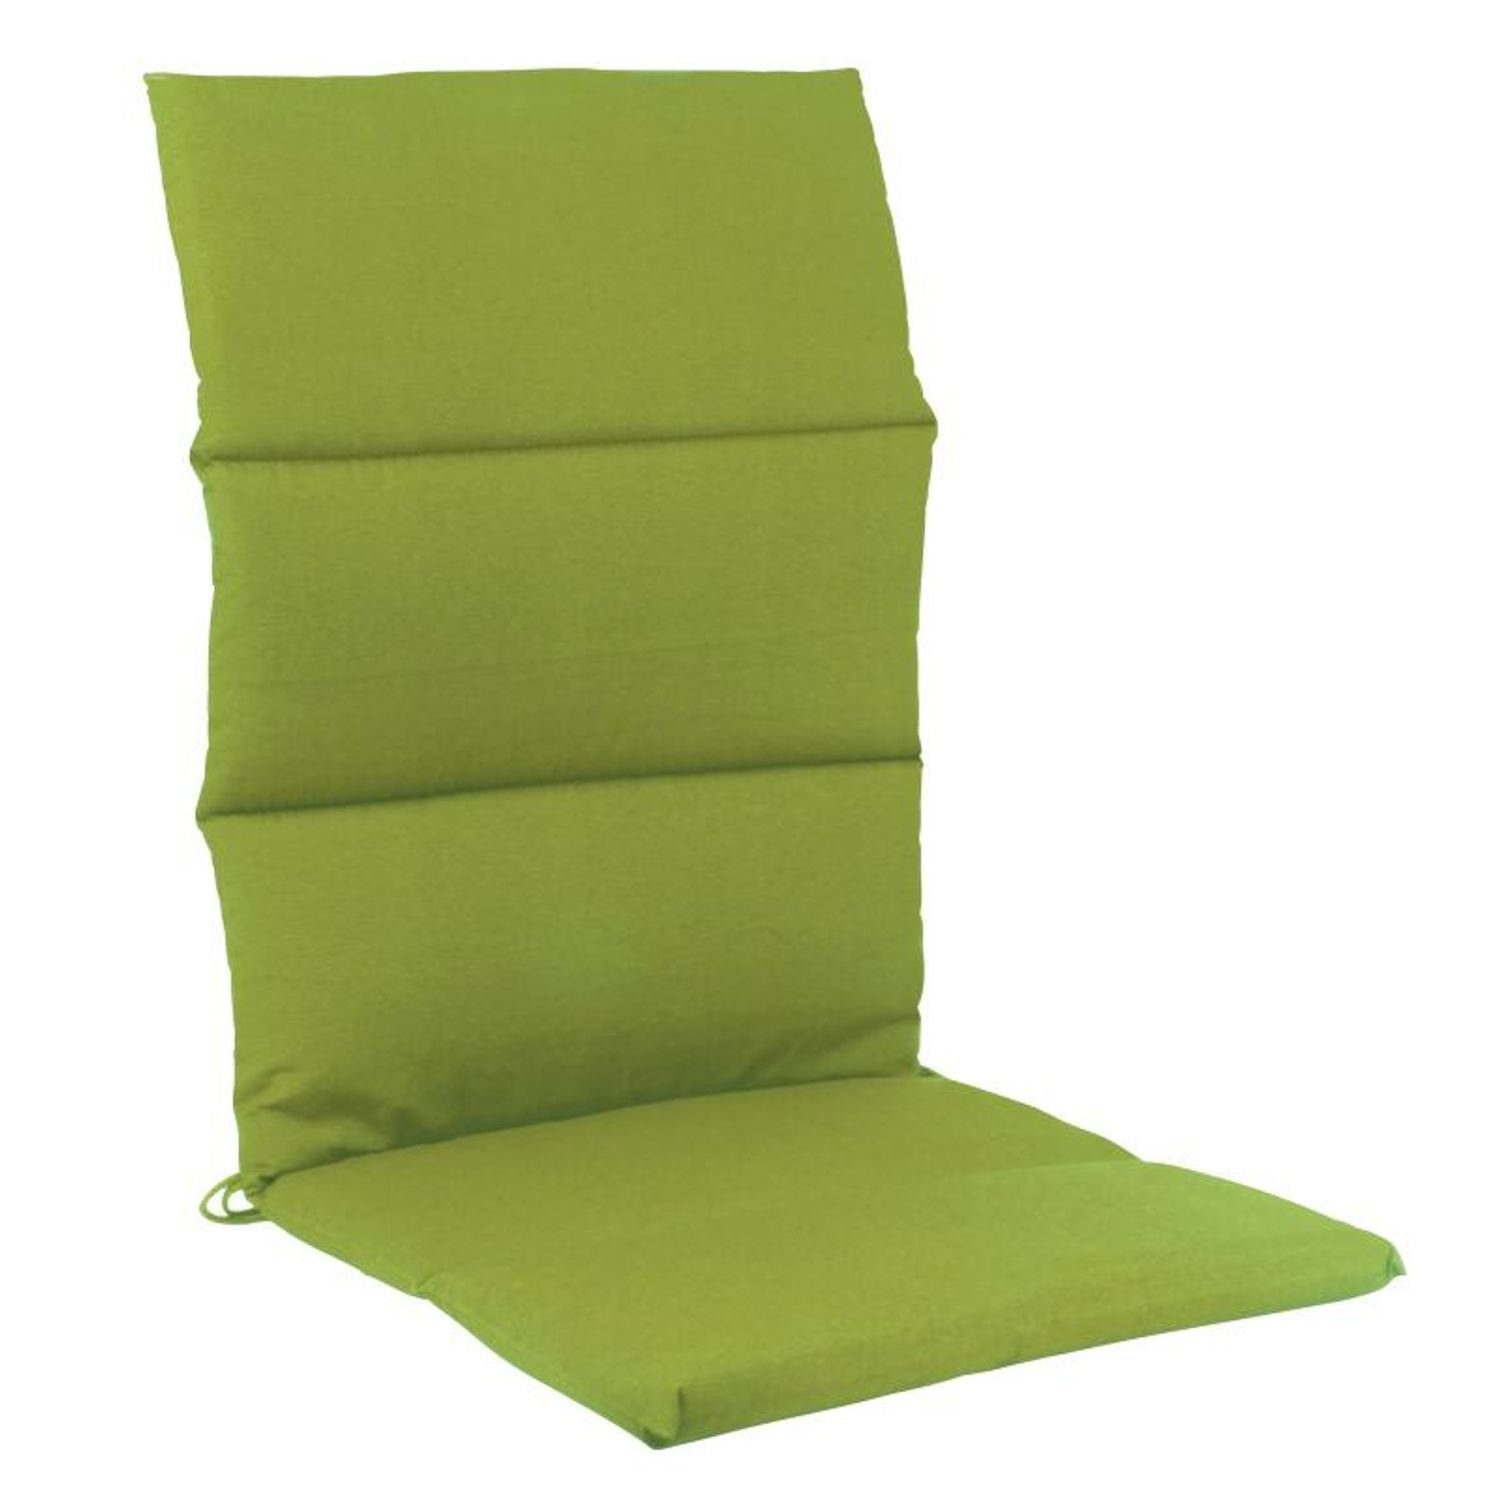 BURI Bankauflage Rollstepp-Hochlehnerauflage Sitzauflage grün Stuhlkissen Gartensessel